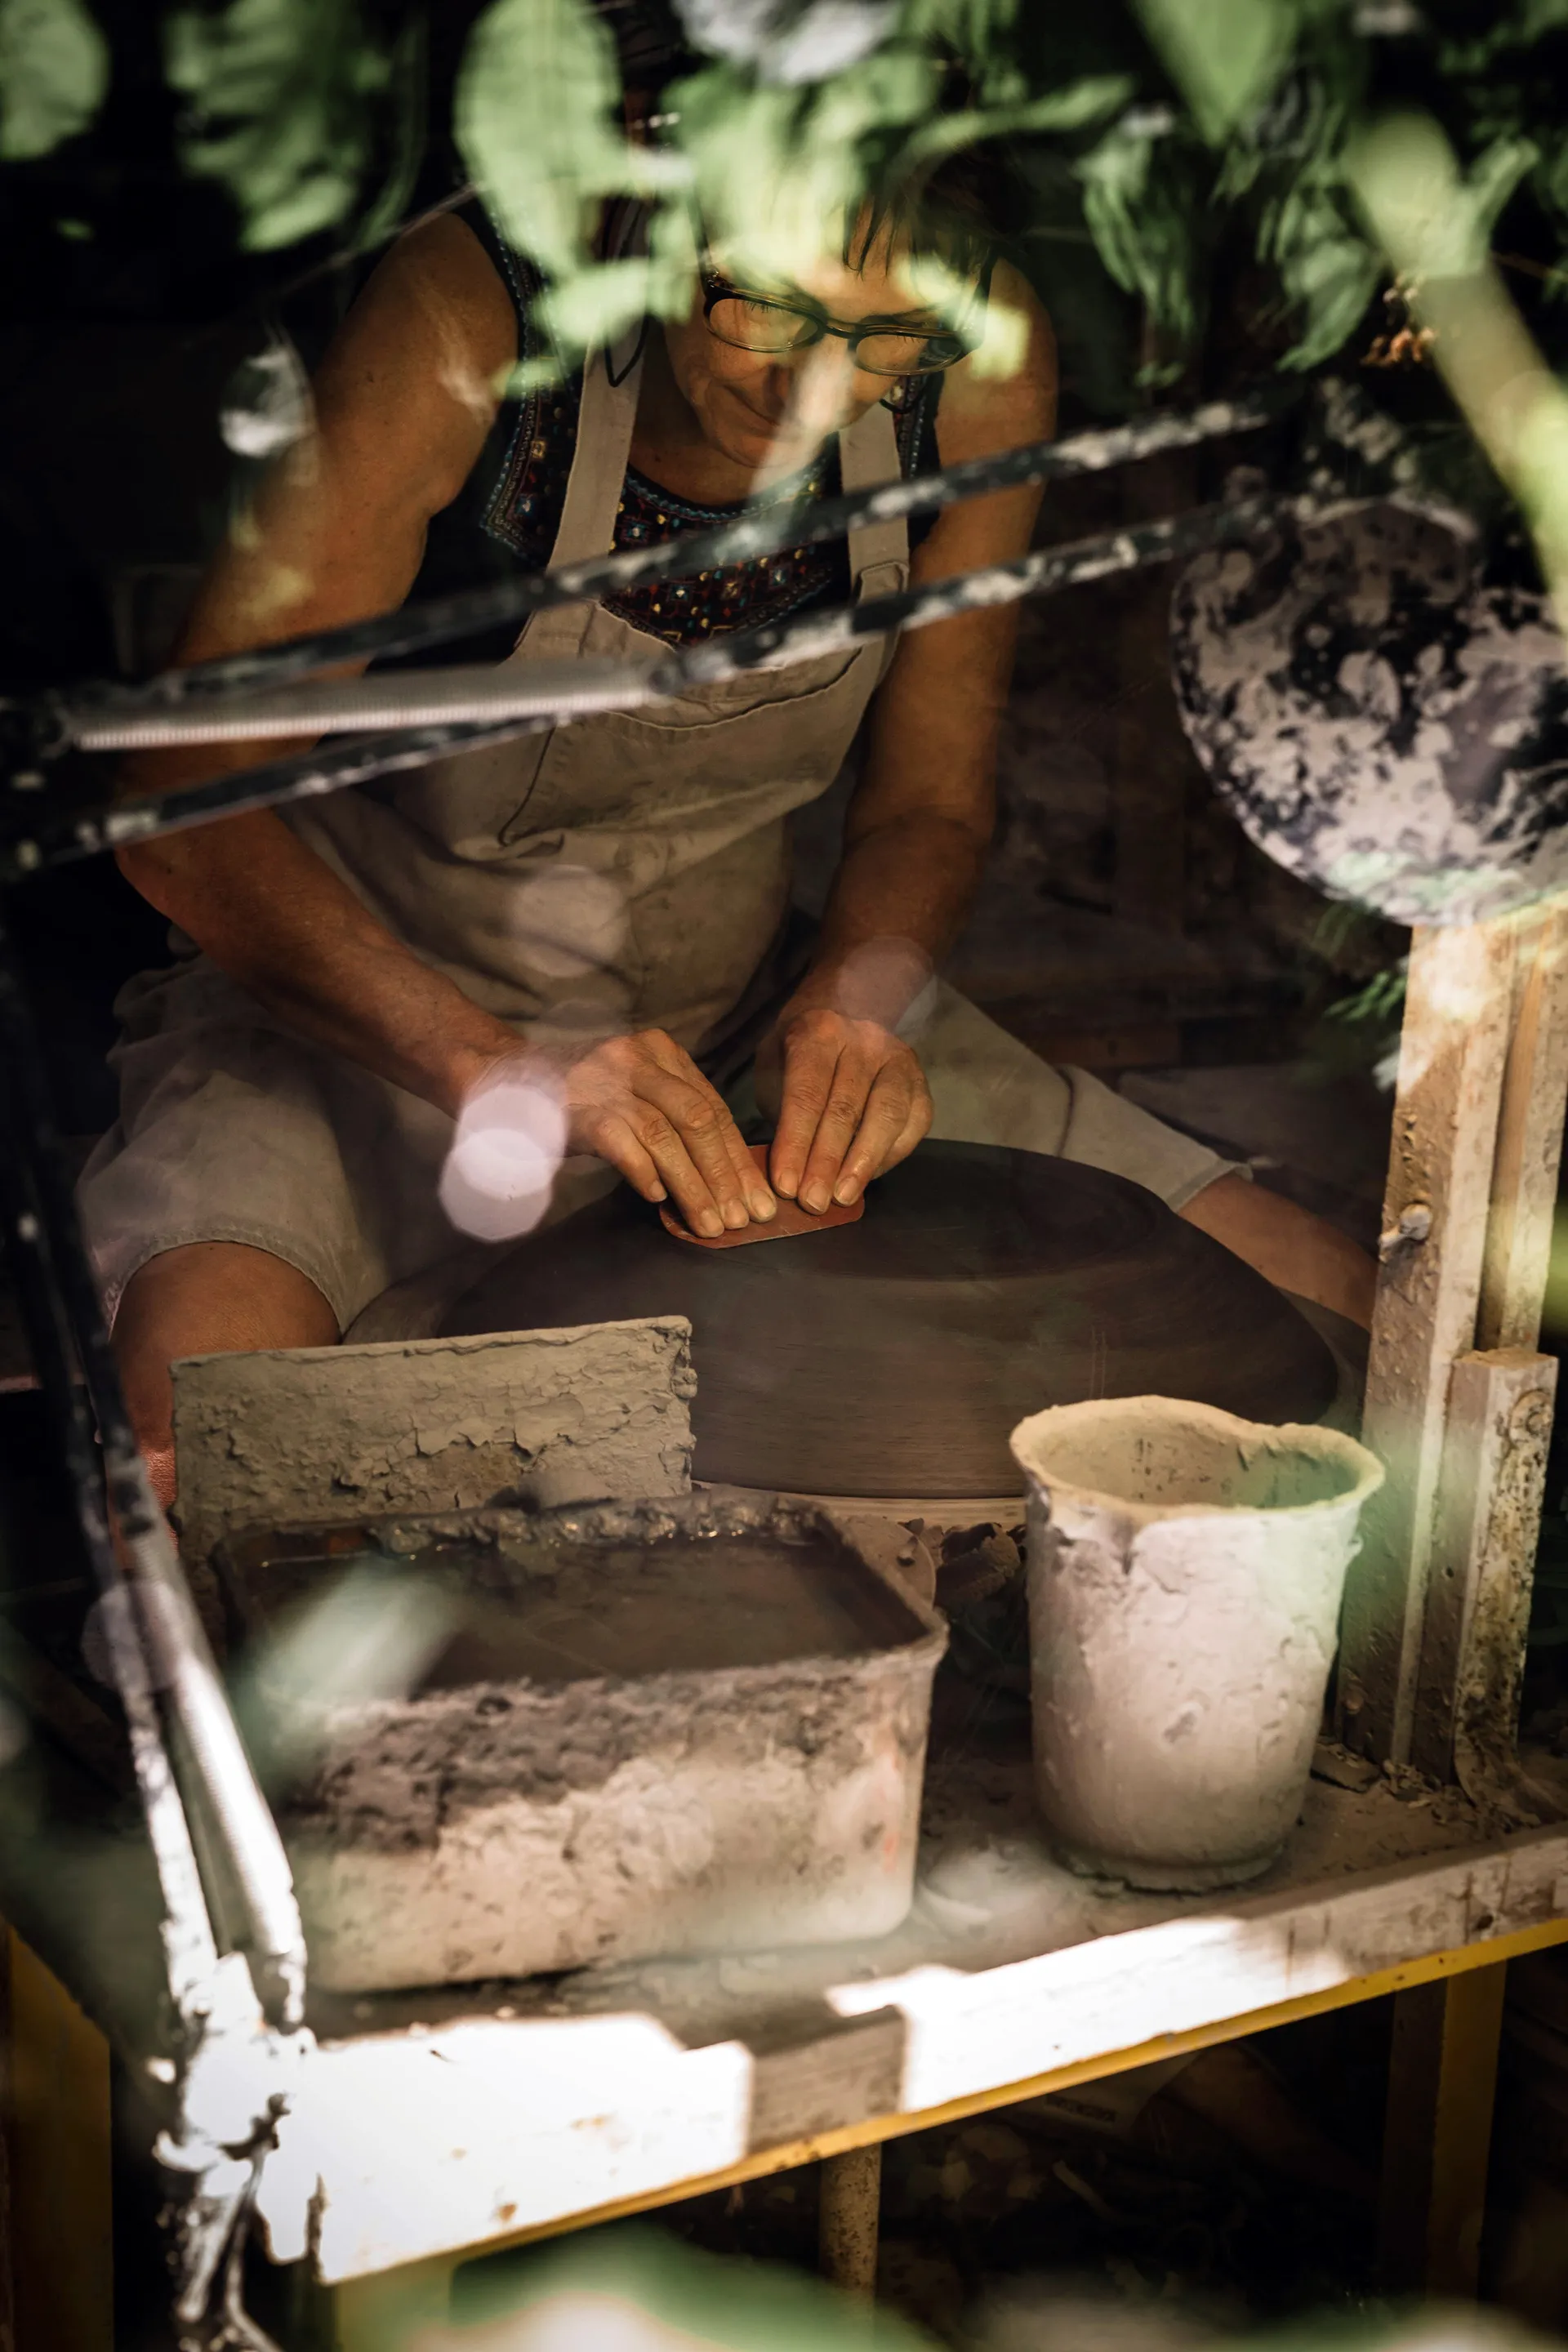 la céramiste travaillant à son tour de poterie